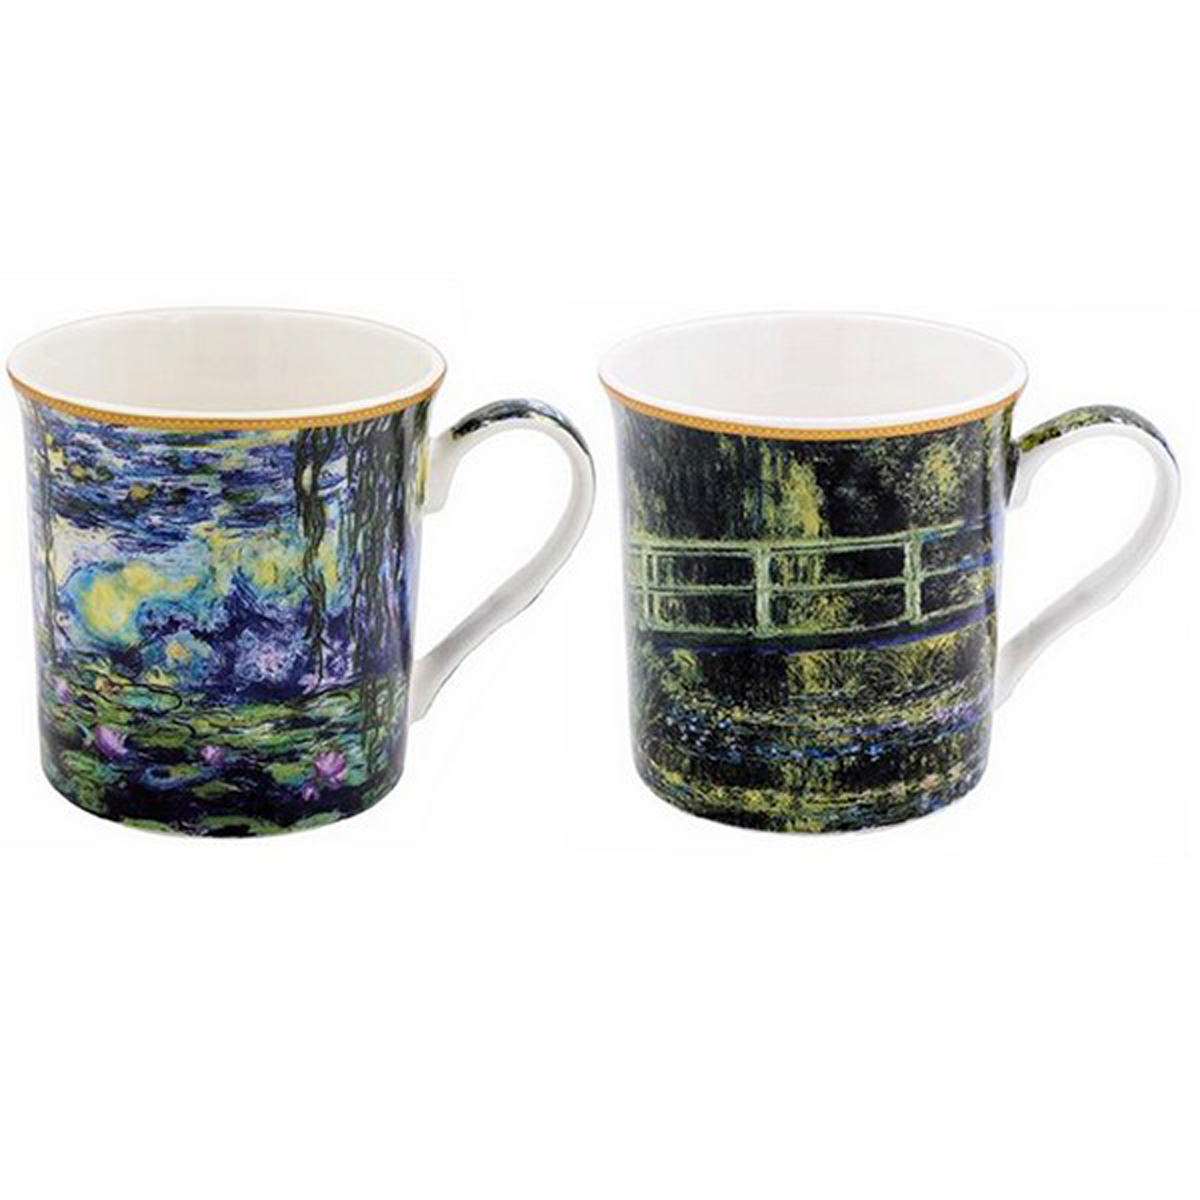 Coffret cadeau porcelaine \'Claude Monet\' (2 mugs) - 85x85 mm - [A0199]